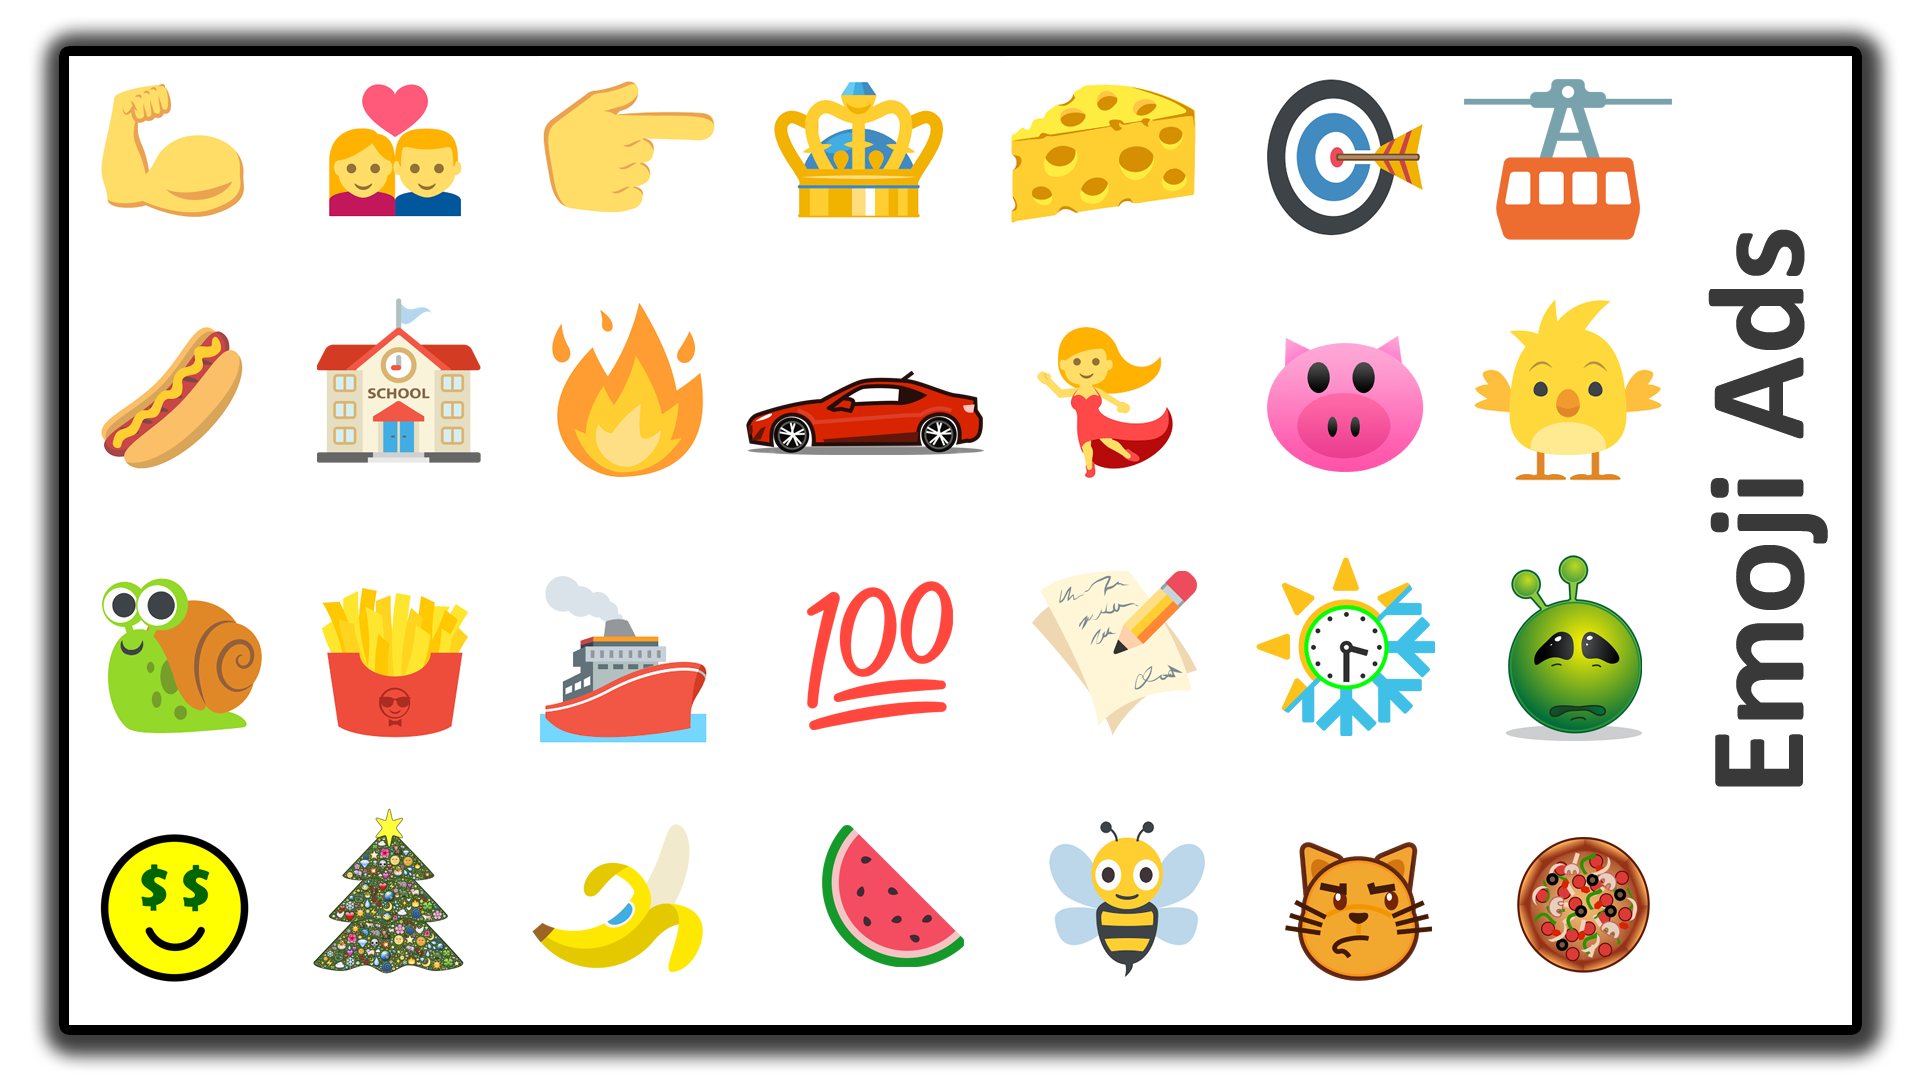 IAB emoji ad format